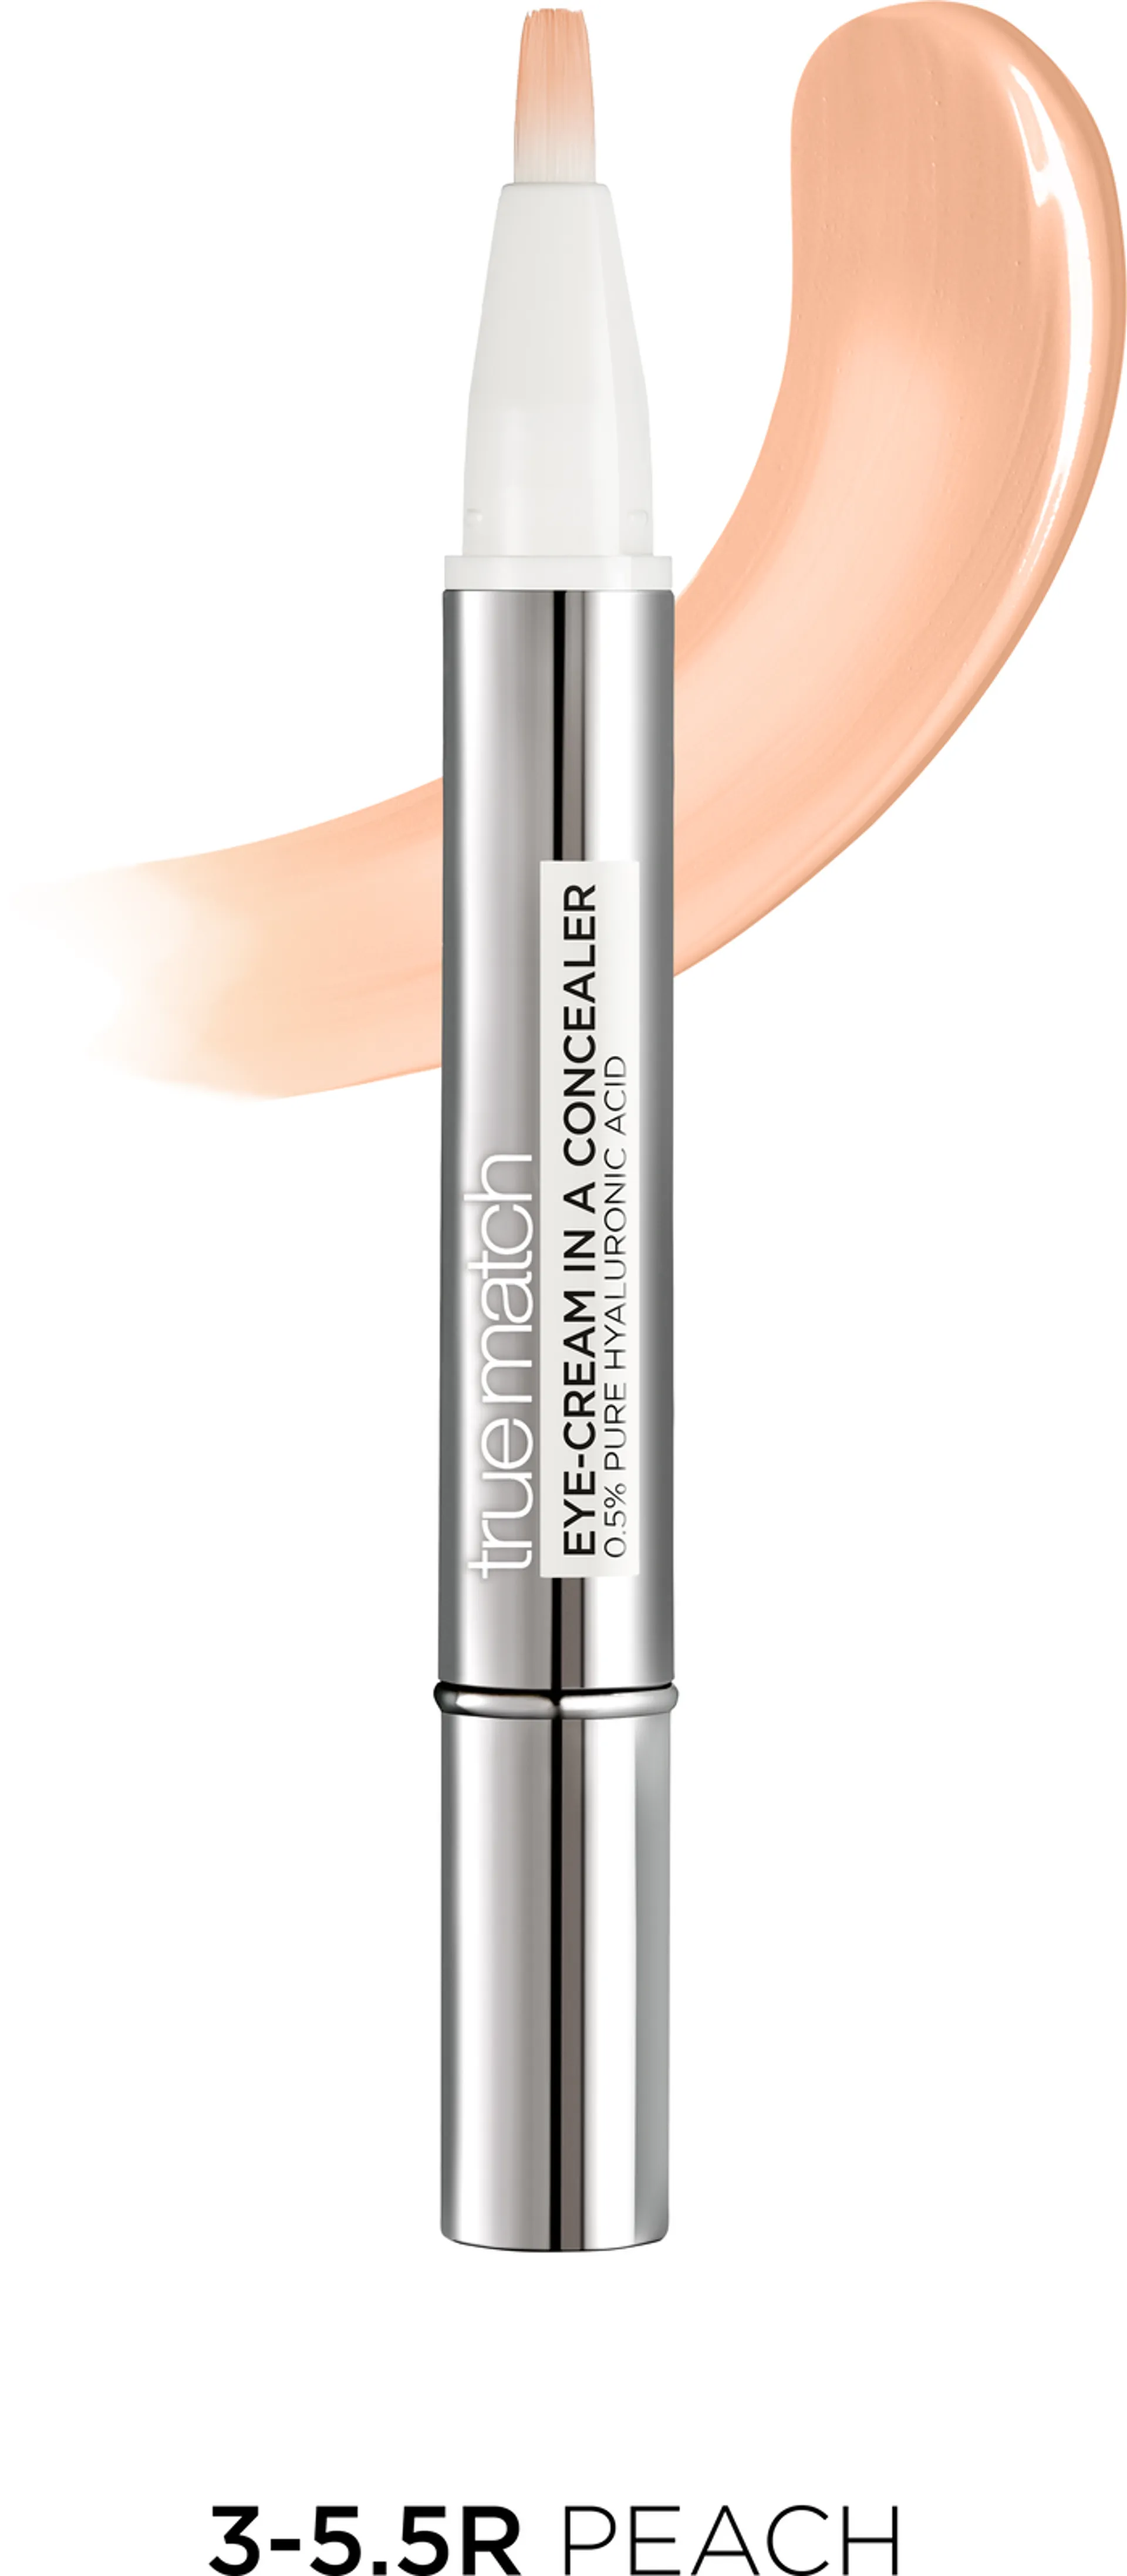 L'Oréal Paris True Match Eye-Cream in a Concealer 3-5,5R Peach peitevoide 2 ml - 2